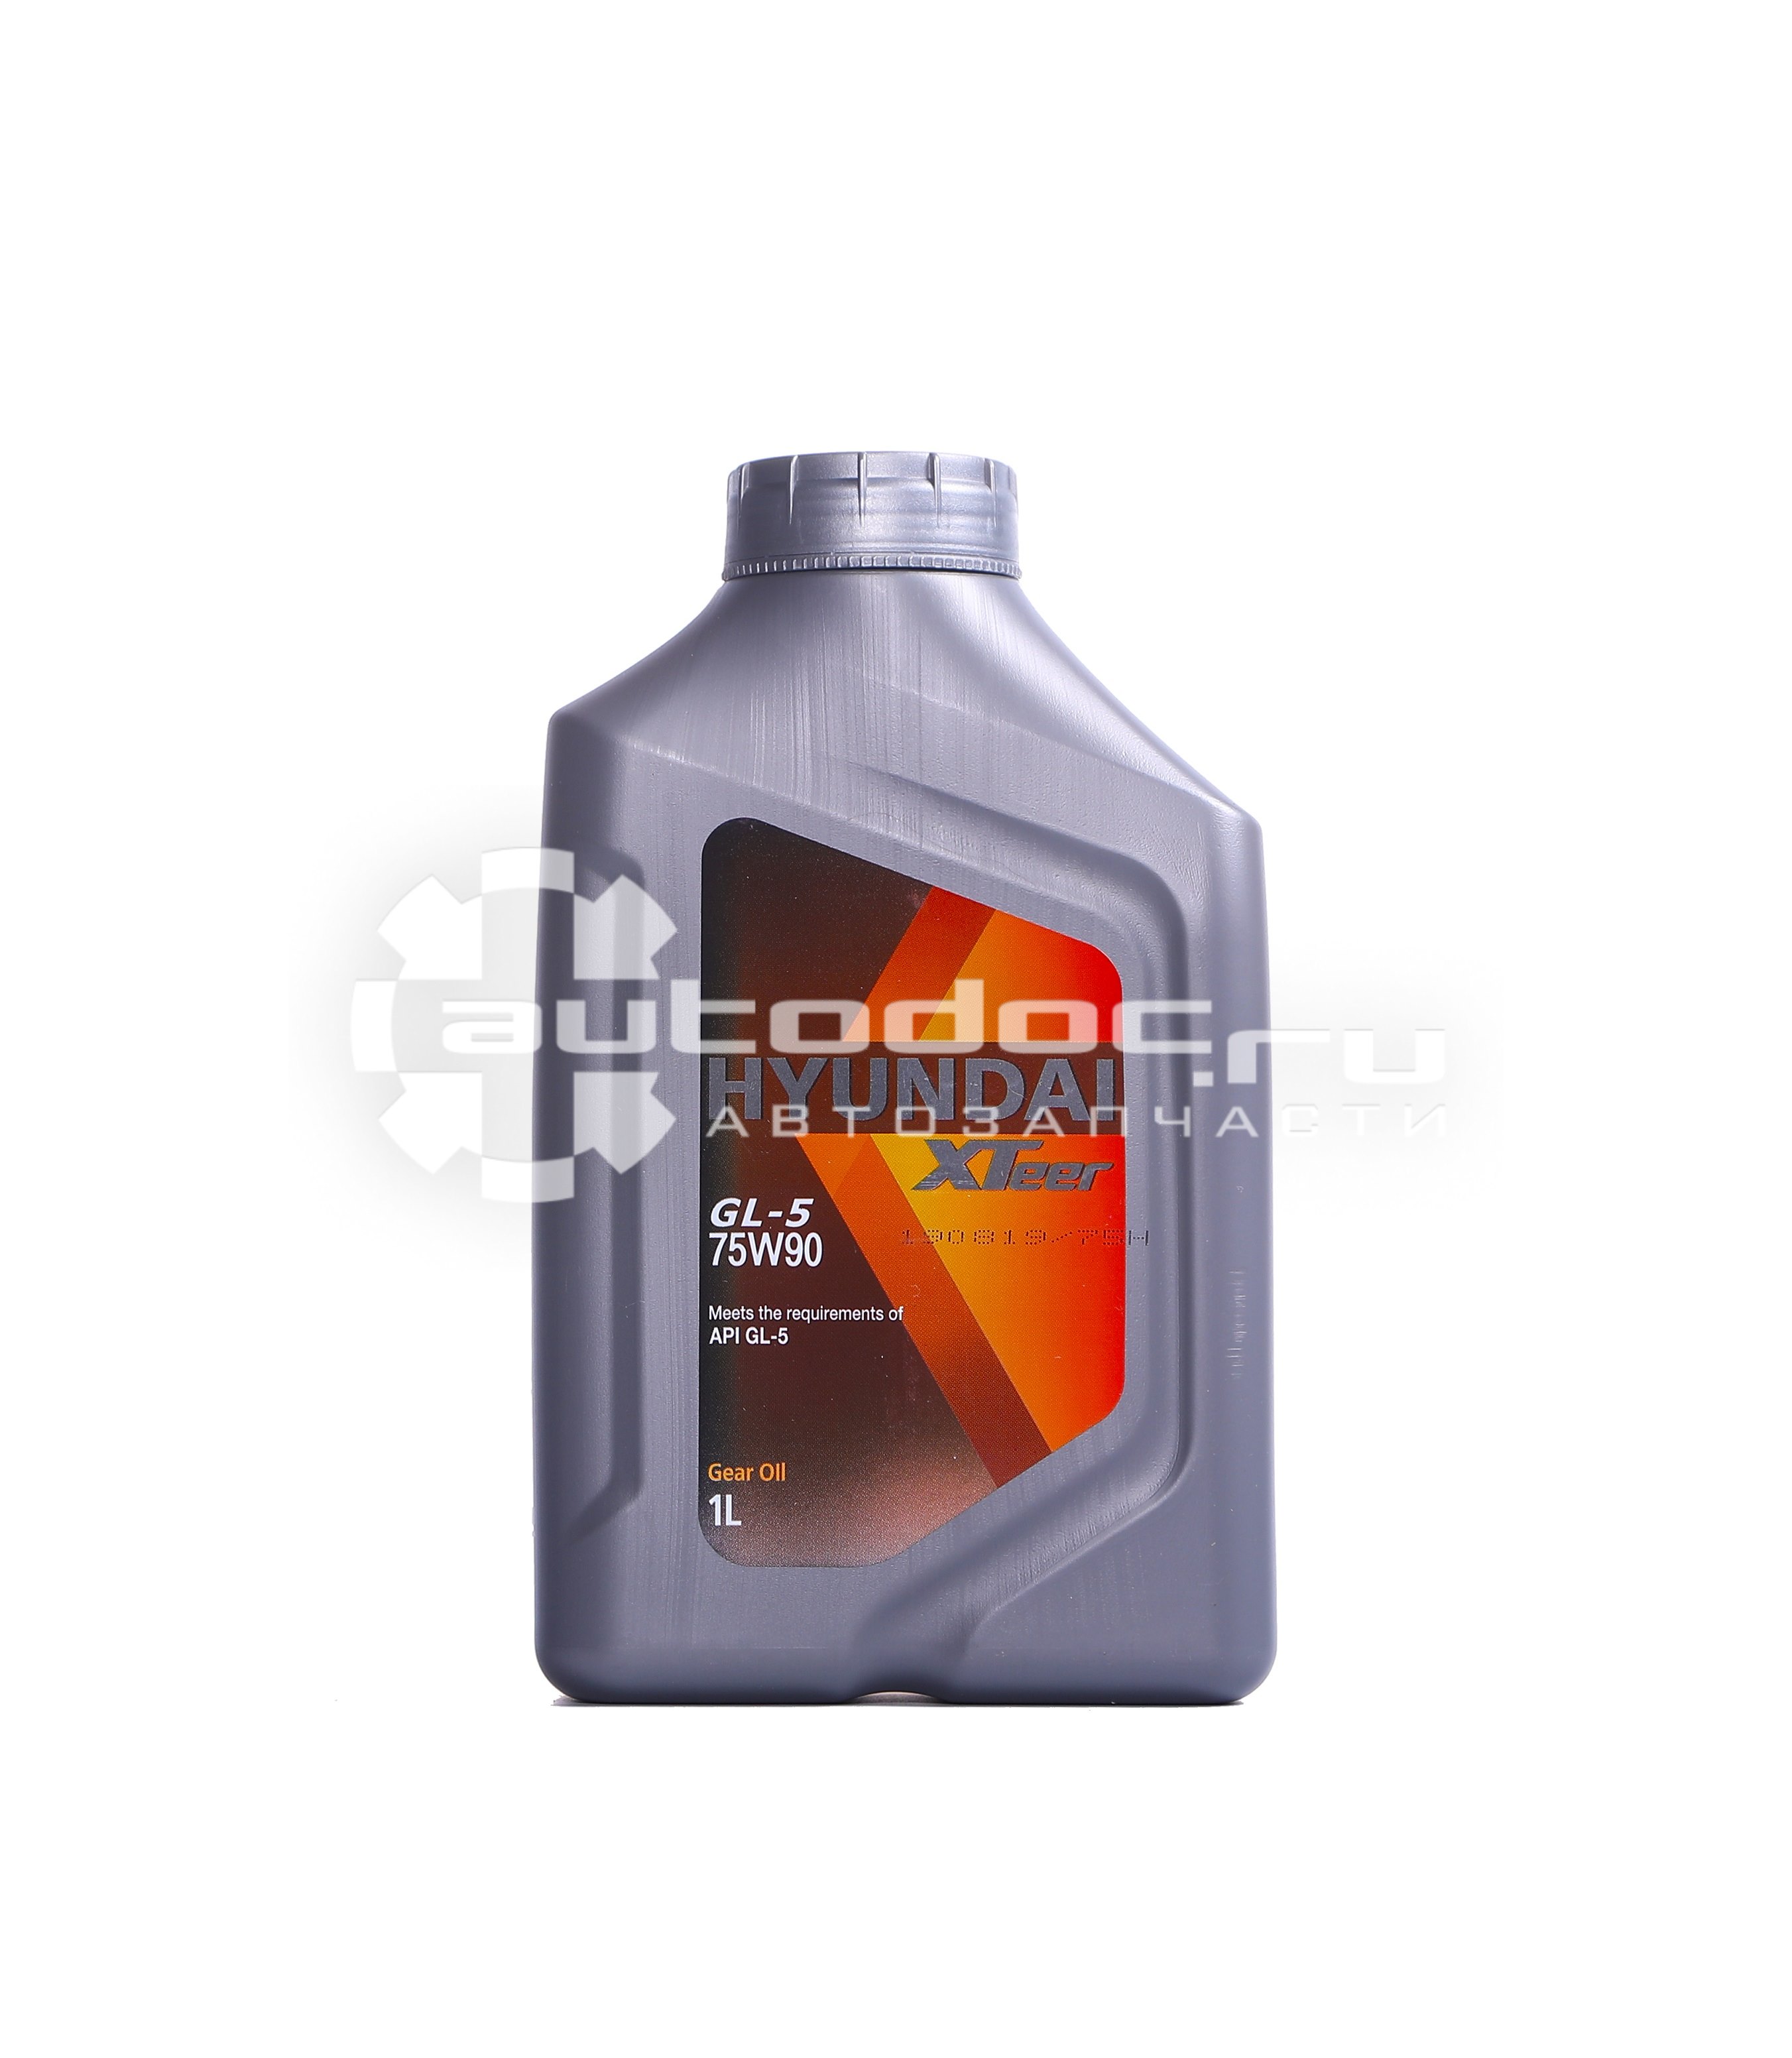 Икс тир масло. 1011413 Hyundai XTEER. Hyundai XTEER Gear Oil-4 75w90 (1l) масло трансмиссионное! Полусинт.\ API gl-4. Трансмиссионное масло Hyundai XTEER Gear Oil-4 75w90 gl-4 1л полусинтетическое. 1011439 Hyundai XTEER.